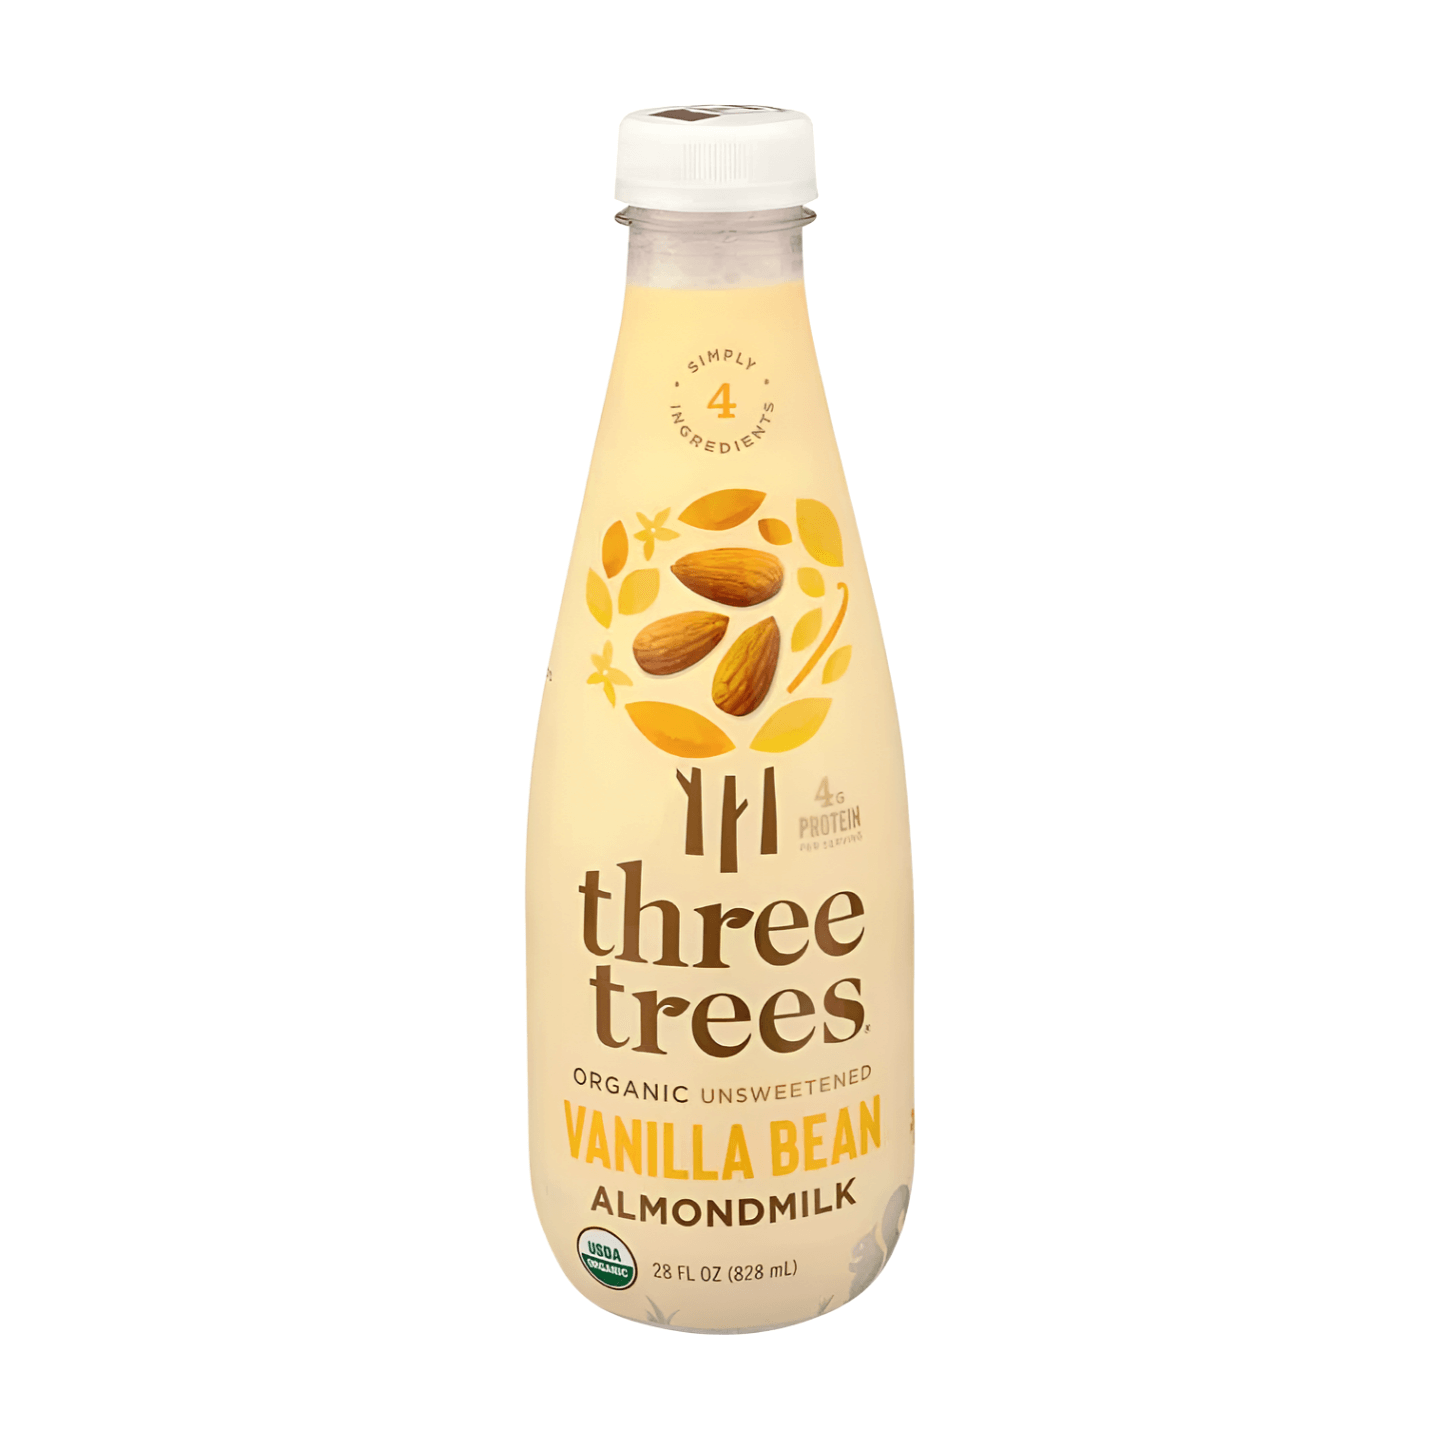 Three Trees Vanilla Bean Almondmilk